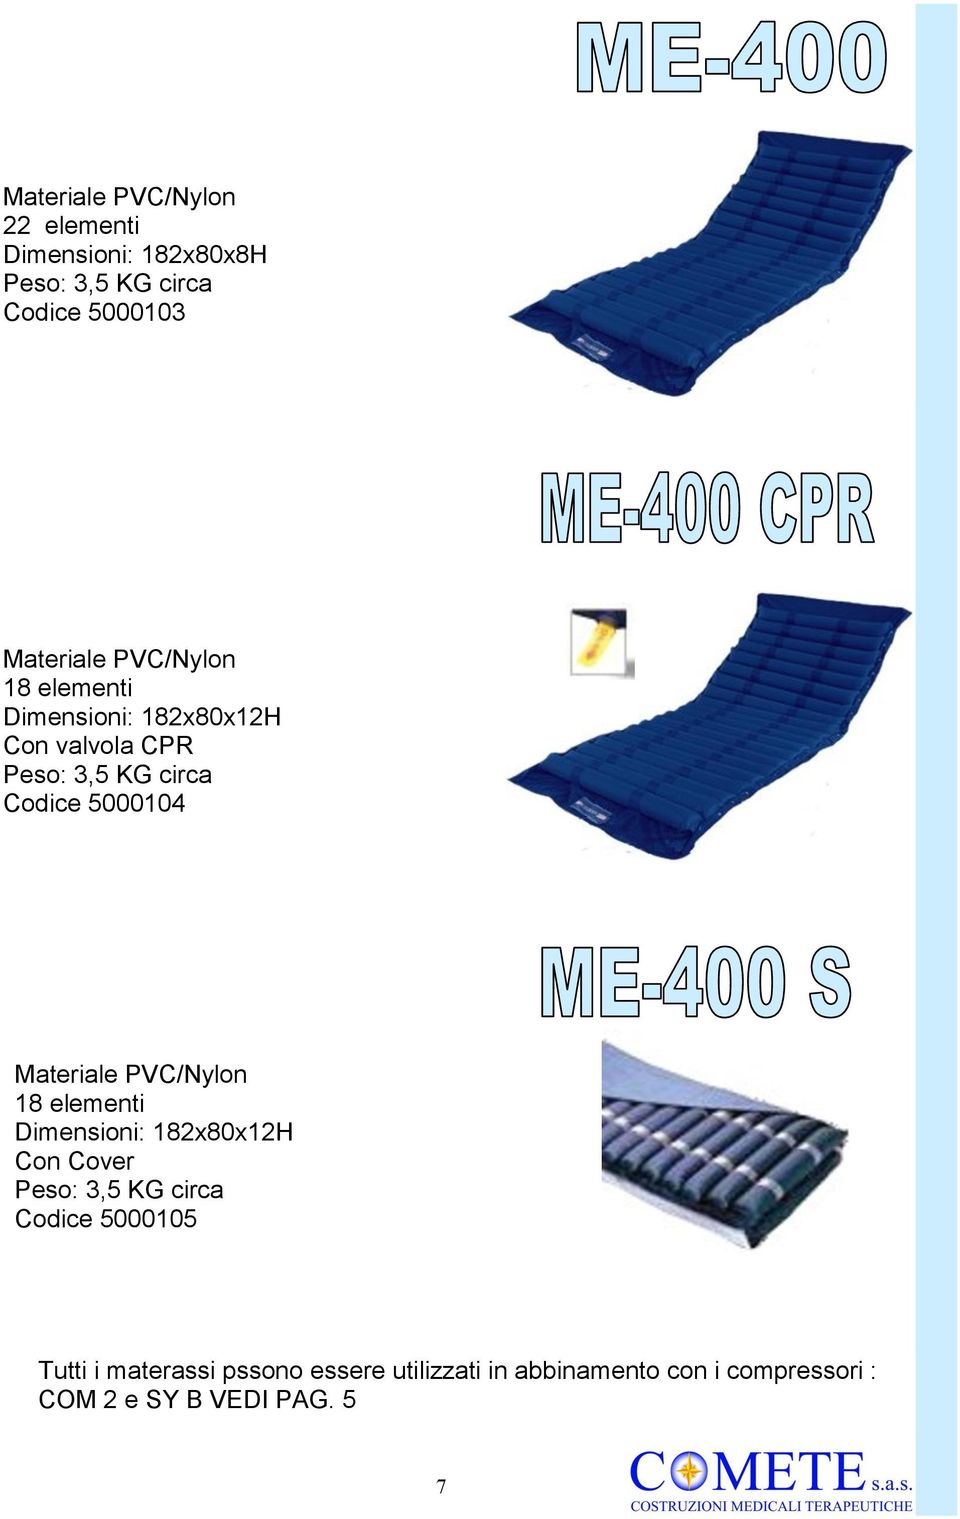 Materiale PVC/Nylon 18 elementi Dimensioni: 182x80x12H Con Cover Peso: 3,5 KG circa Codice 5000105